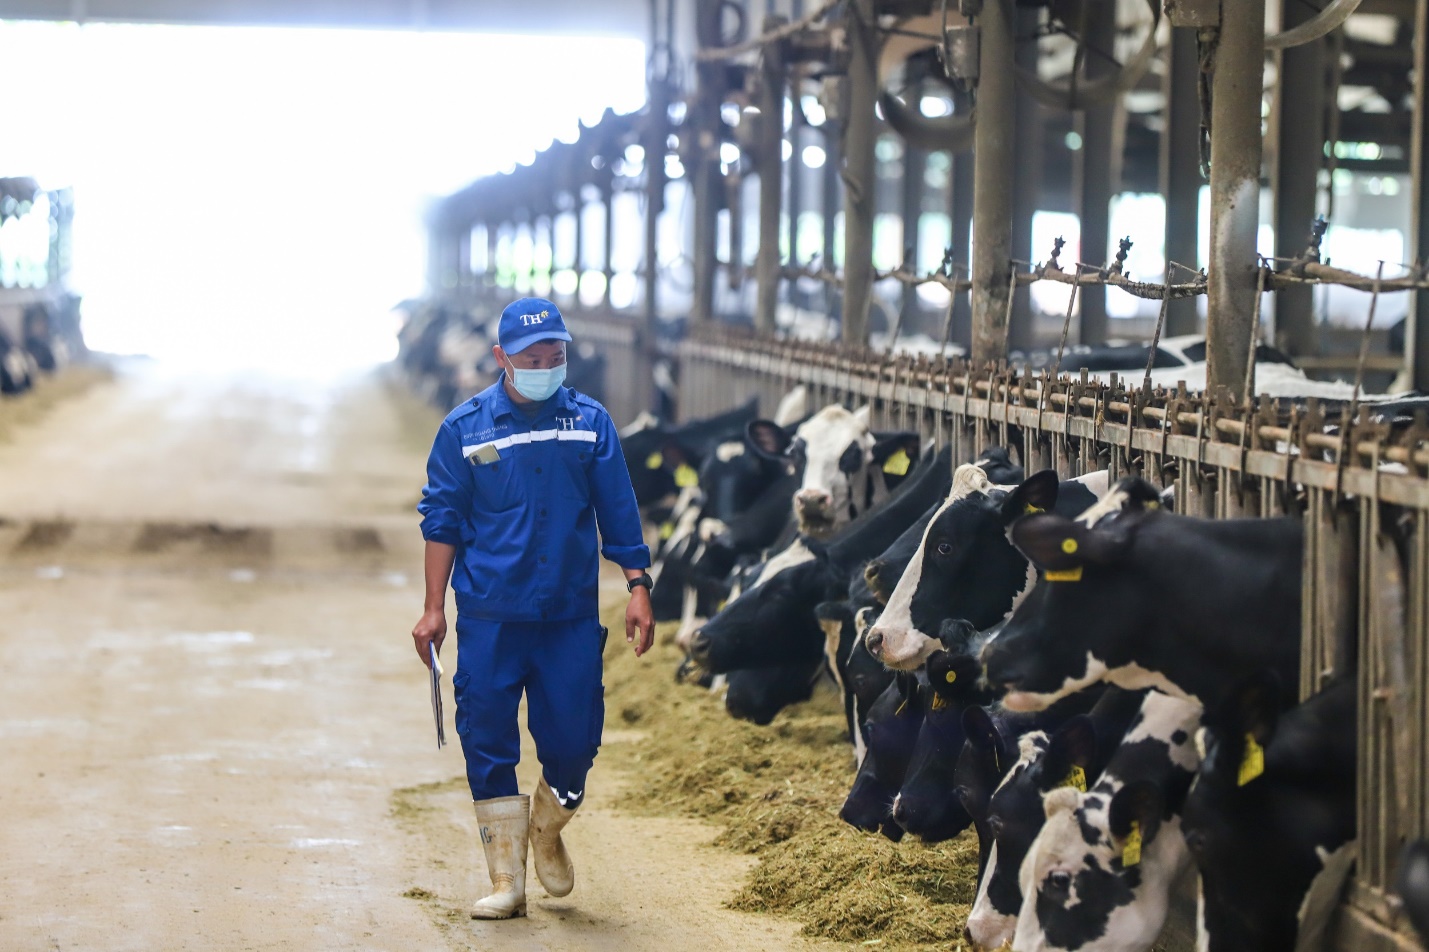 TH nhập khẩu thêm 2.000 bò sữa thuần chủng Holstein Friesian từ Mỹ - Ảnh 3.